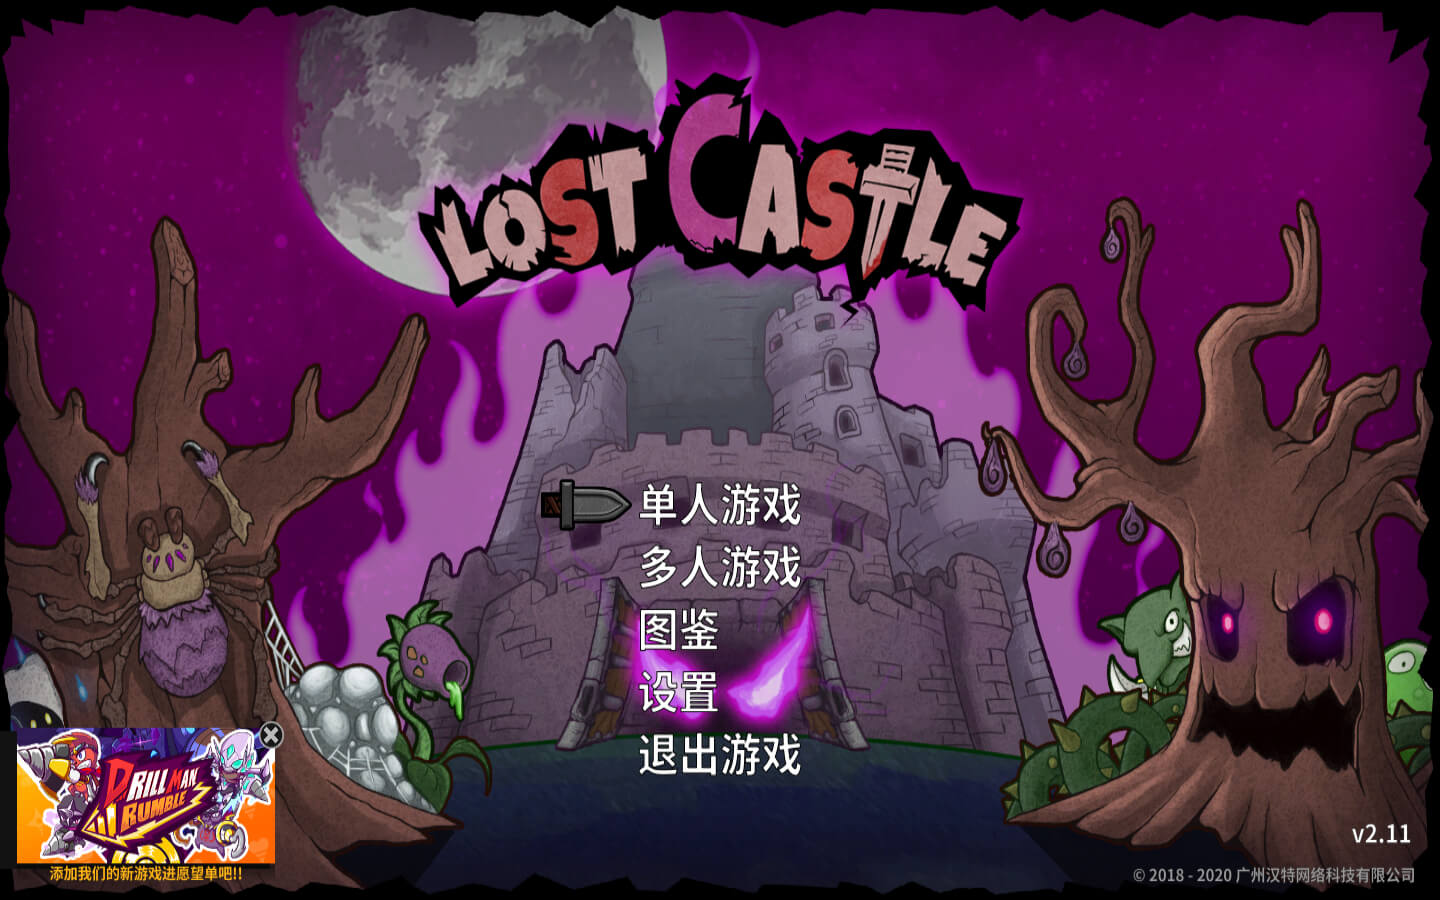 失落城堡豪华版 for Mac v2.11 Lost Castle 中文原生版 可在线联机 苹果电脑